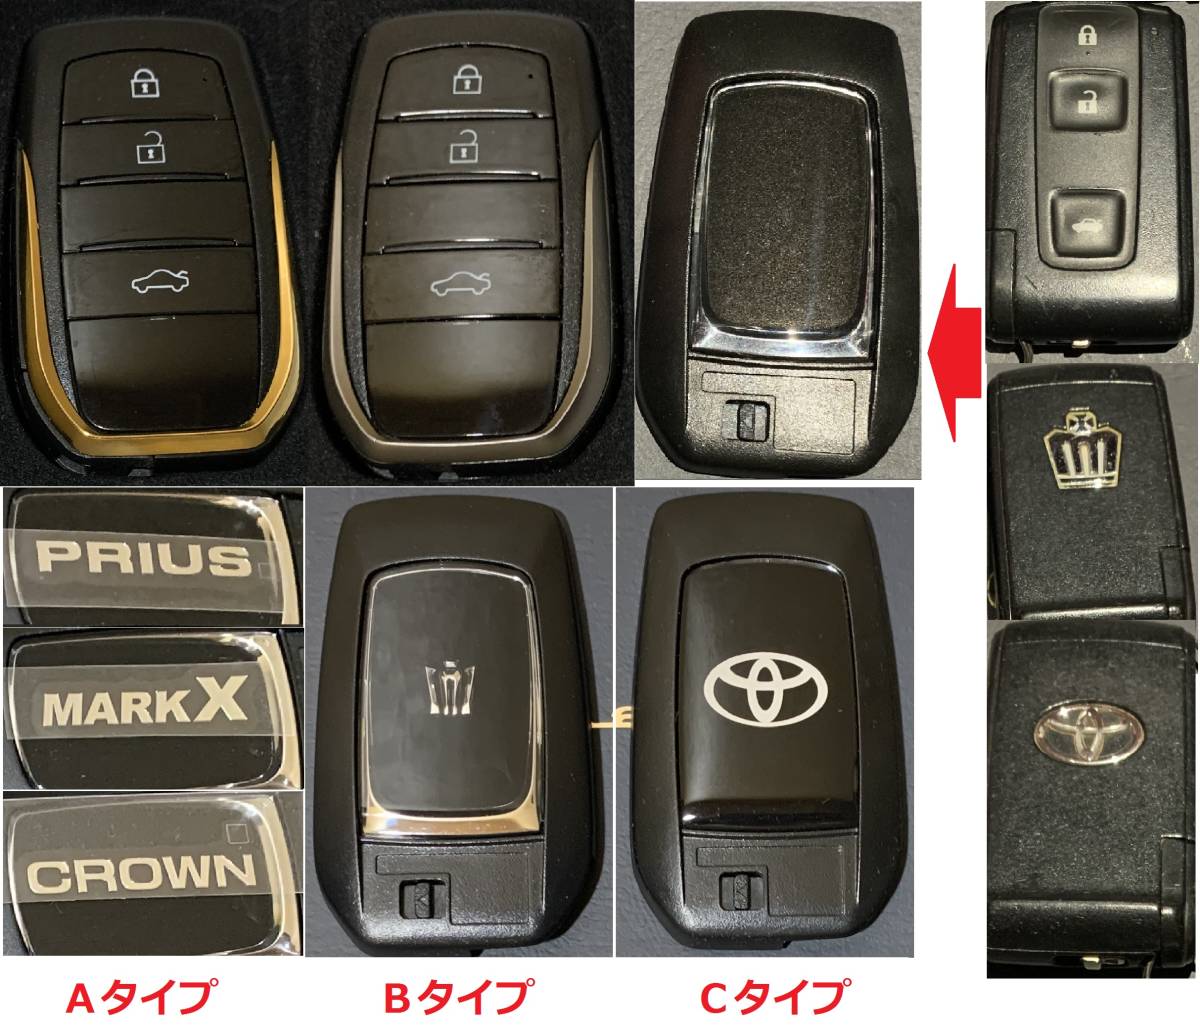 180 серия Crown Zero Crown 20 серия Prius и т.п. 2~3 кнопка Toyota начальная модель "умный" ключ - действующий способ swap двусторонний . орнамент "умный" ключ кейс csdi-f